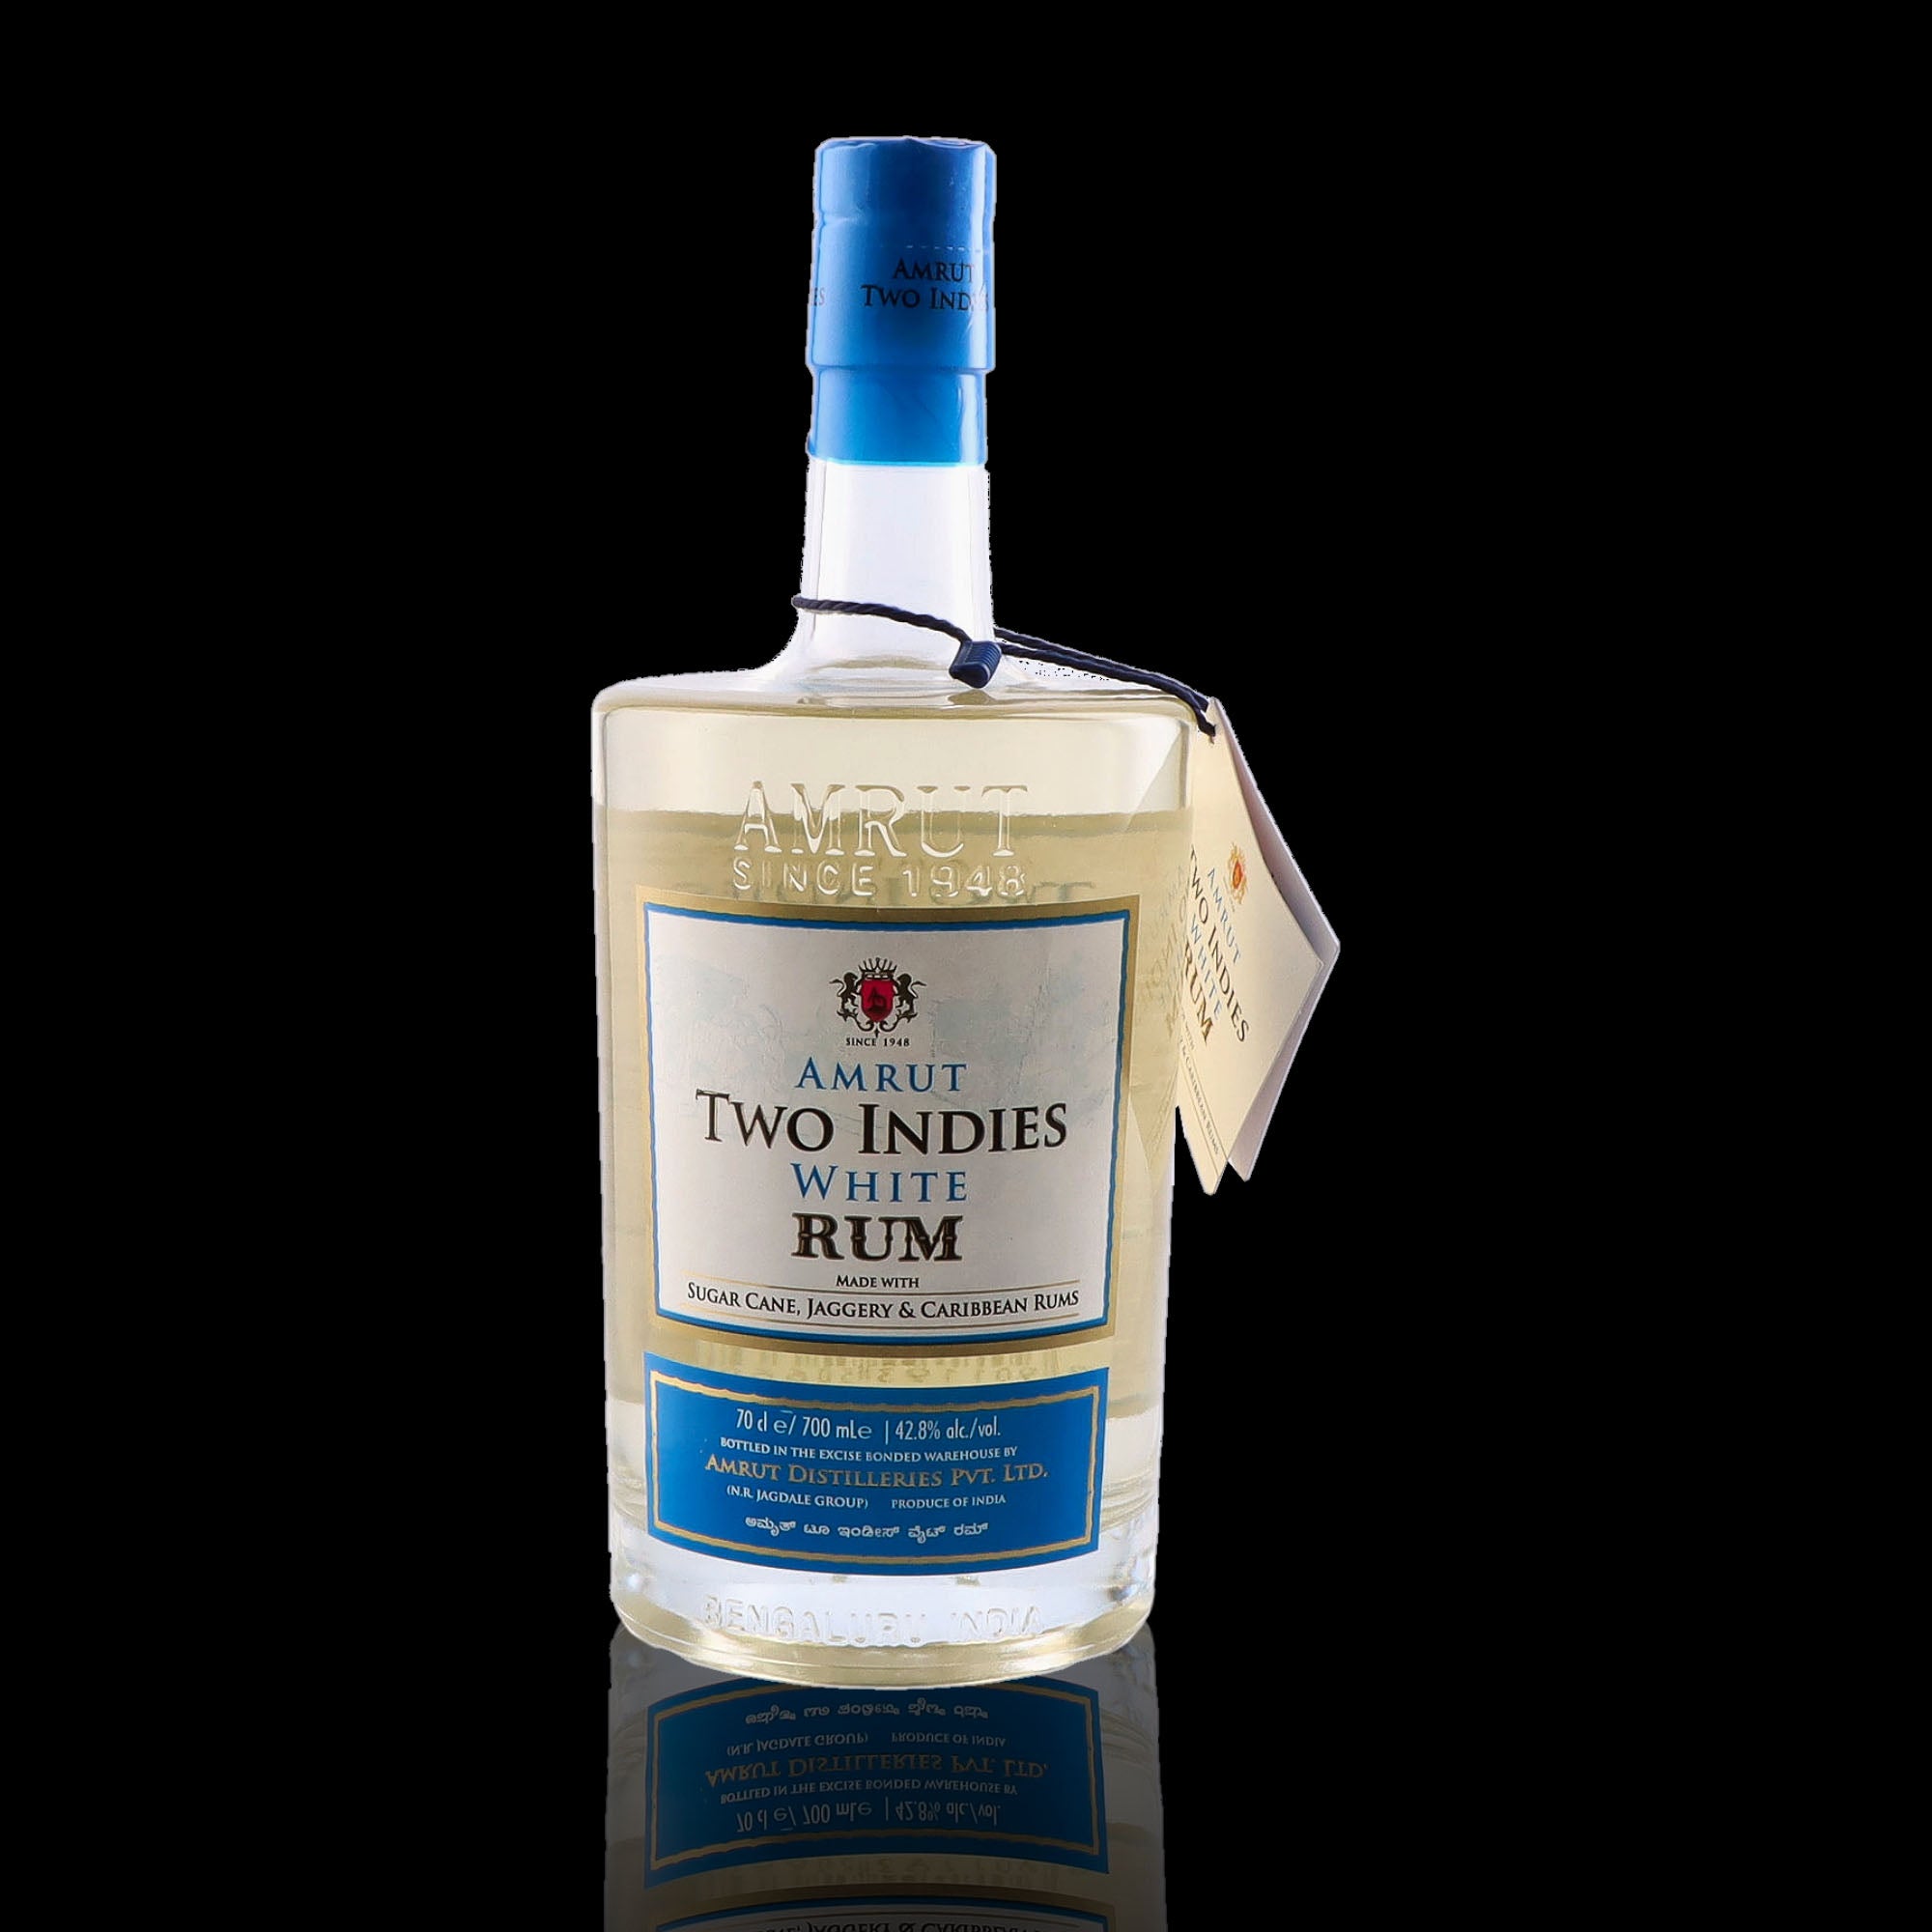 Une bouteille de rhum blanc, de la marque Amrut, nommée Two Indies White Rum.